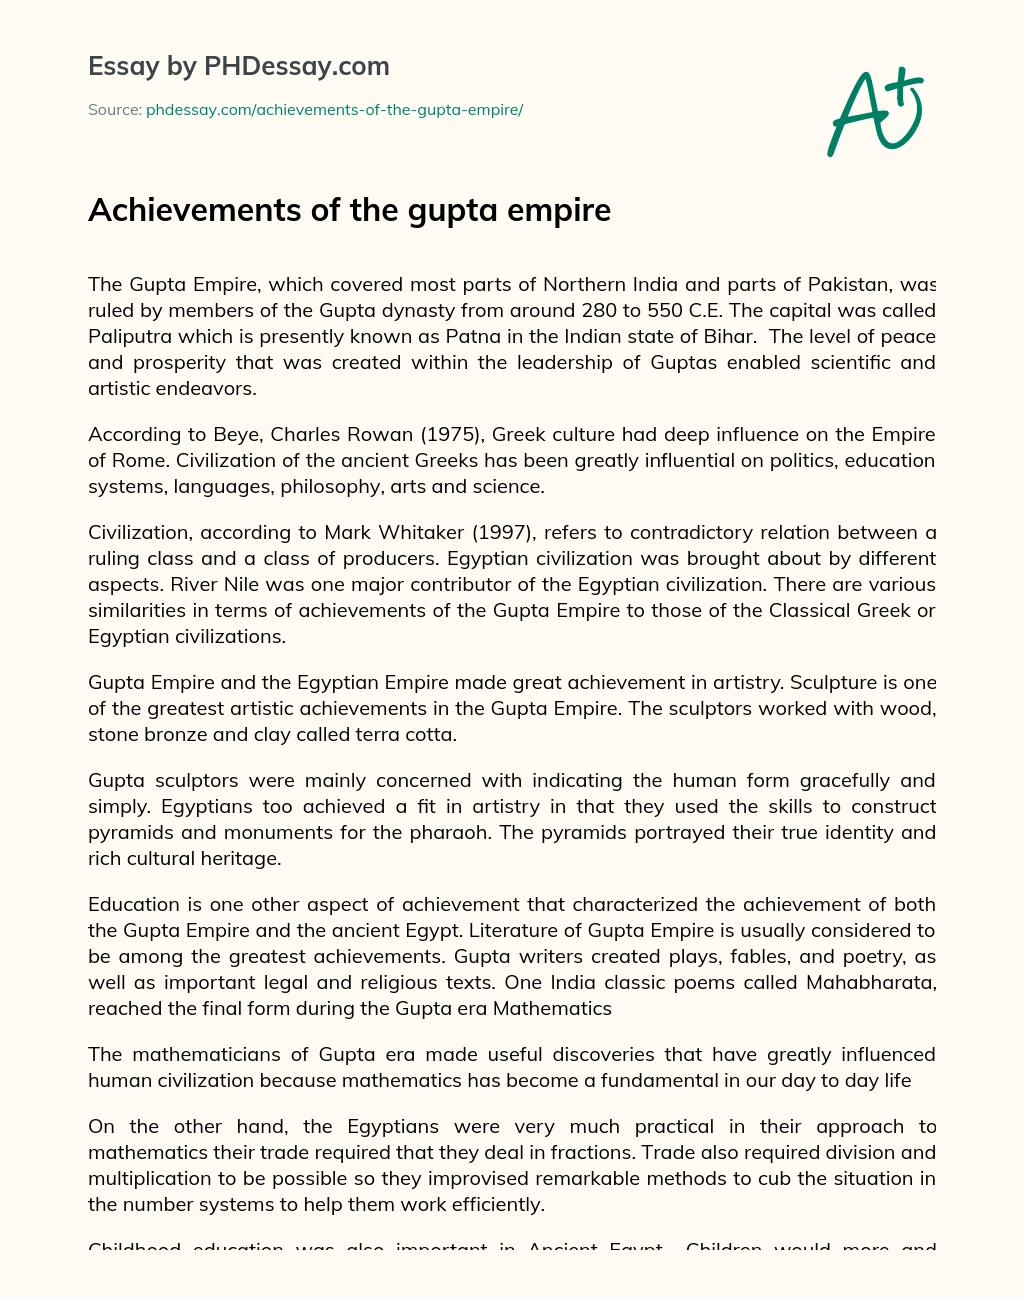 Achievements of the gupta empire essay